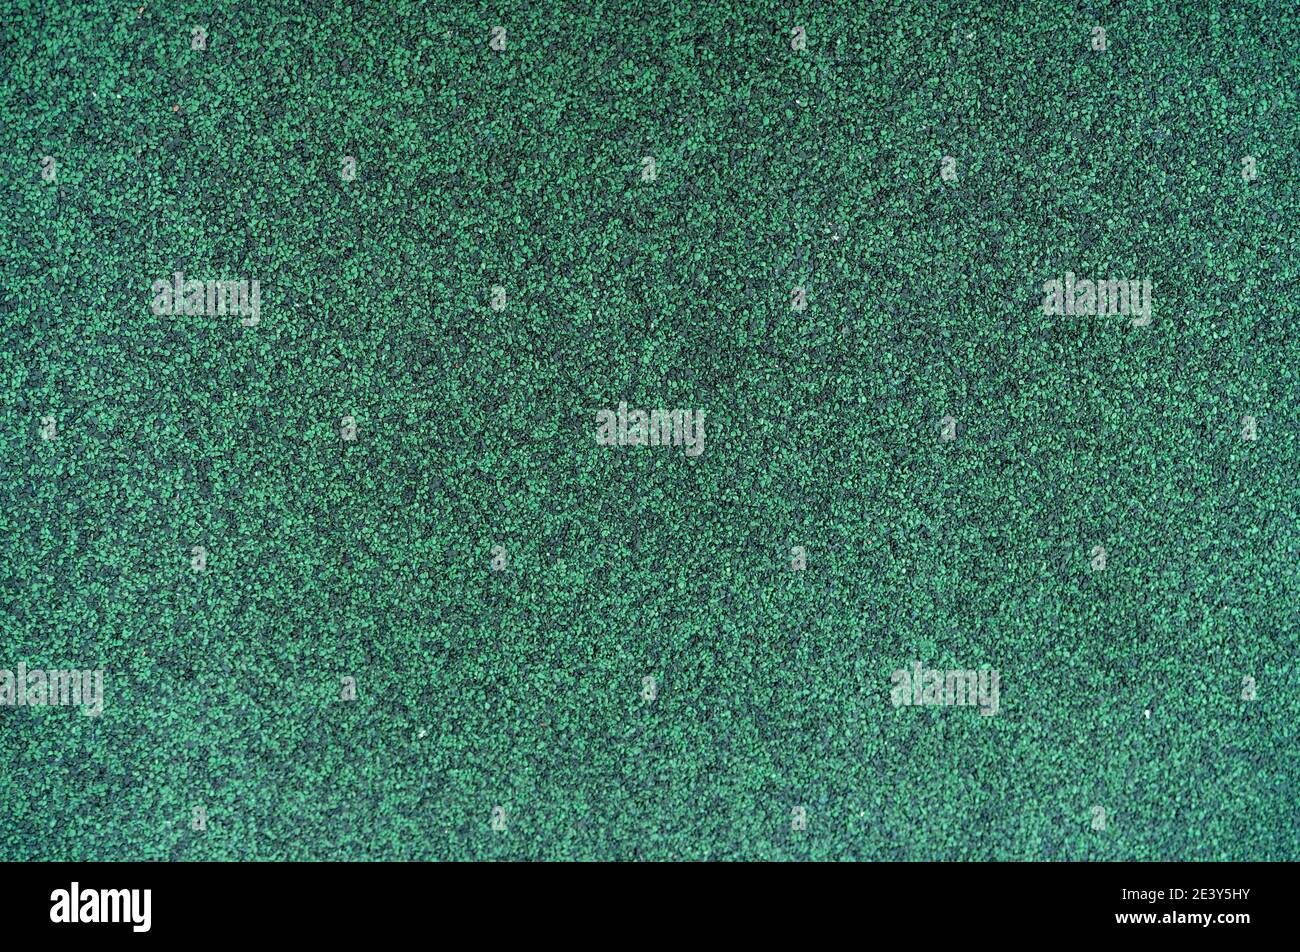 Hunter grün Farbe Schindeln Dach Textur Hintergrund. Dachmaterial. Dicht von rauhen dunkelgrünen Granulat Oberfläche Schindeldach Textur Hintergrund. Stockfoto